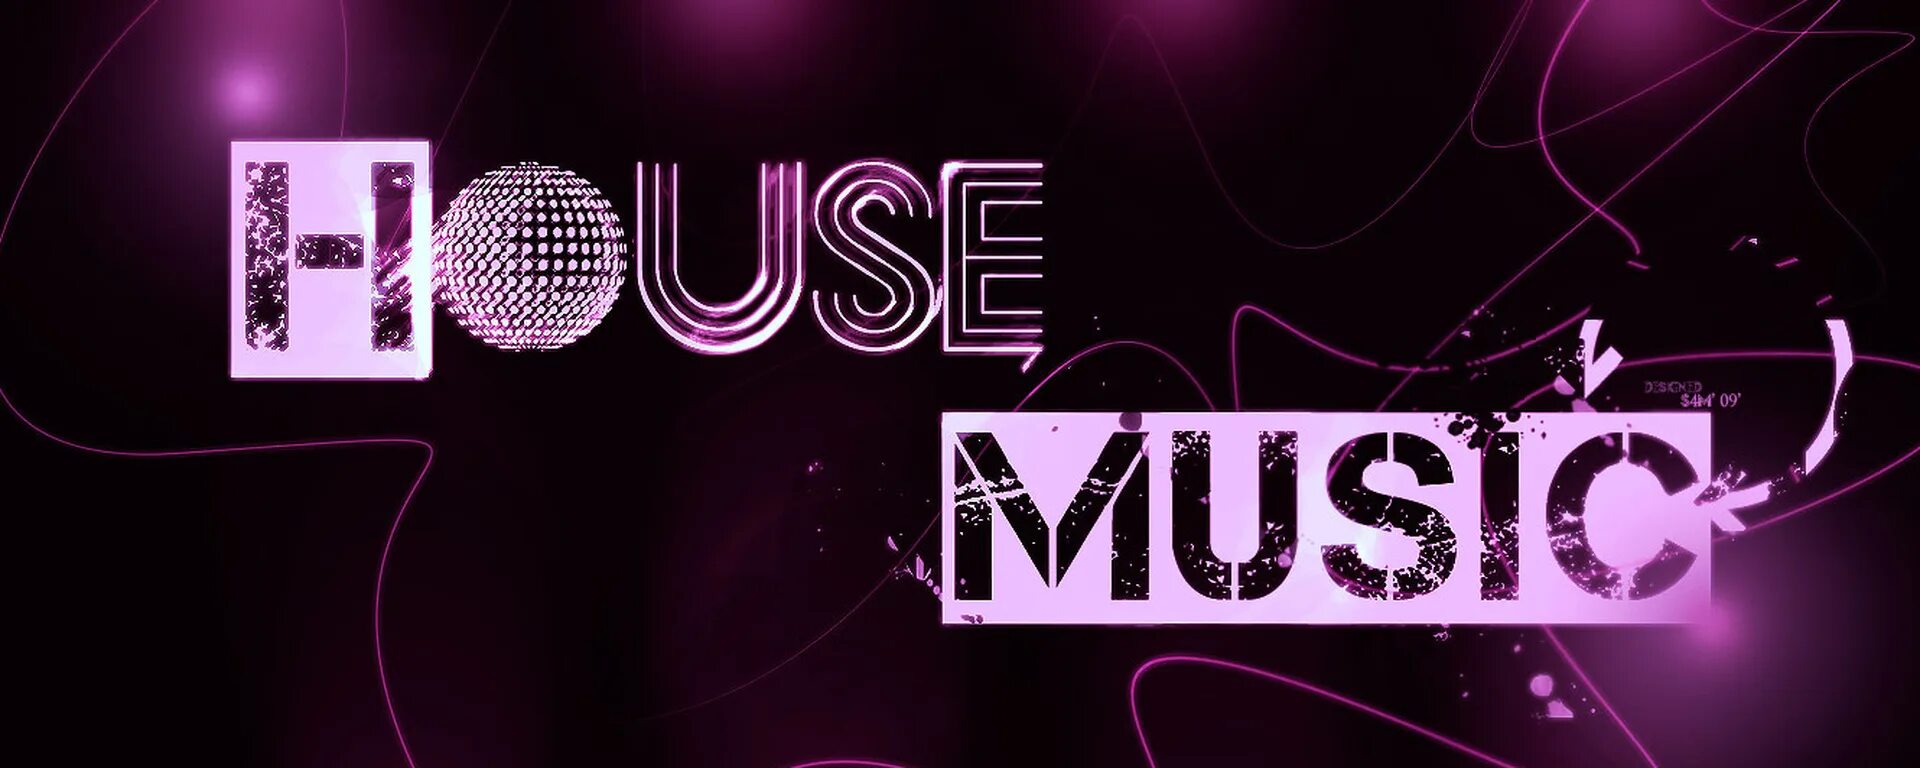 Саундтрек хаус. Хаус Мьюзик. House Music картинки. Хаус стиль музыки. House Music обложка.